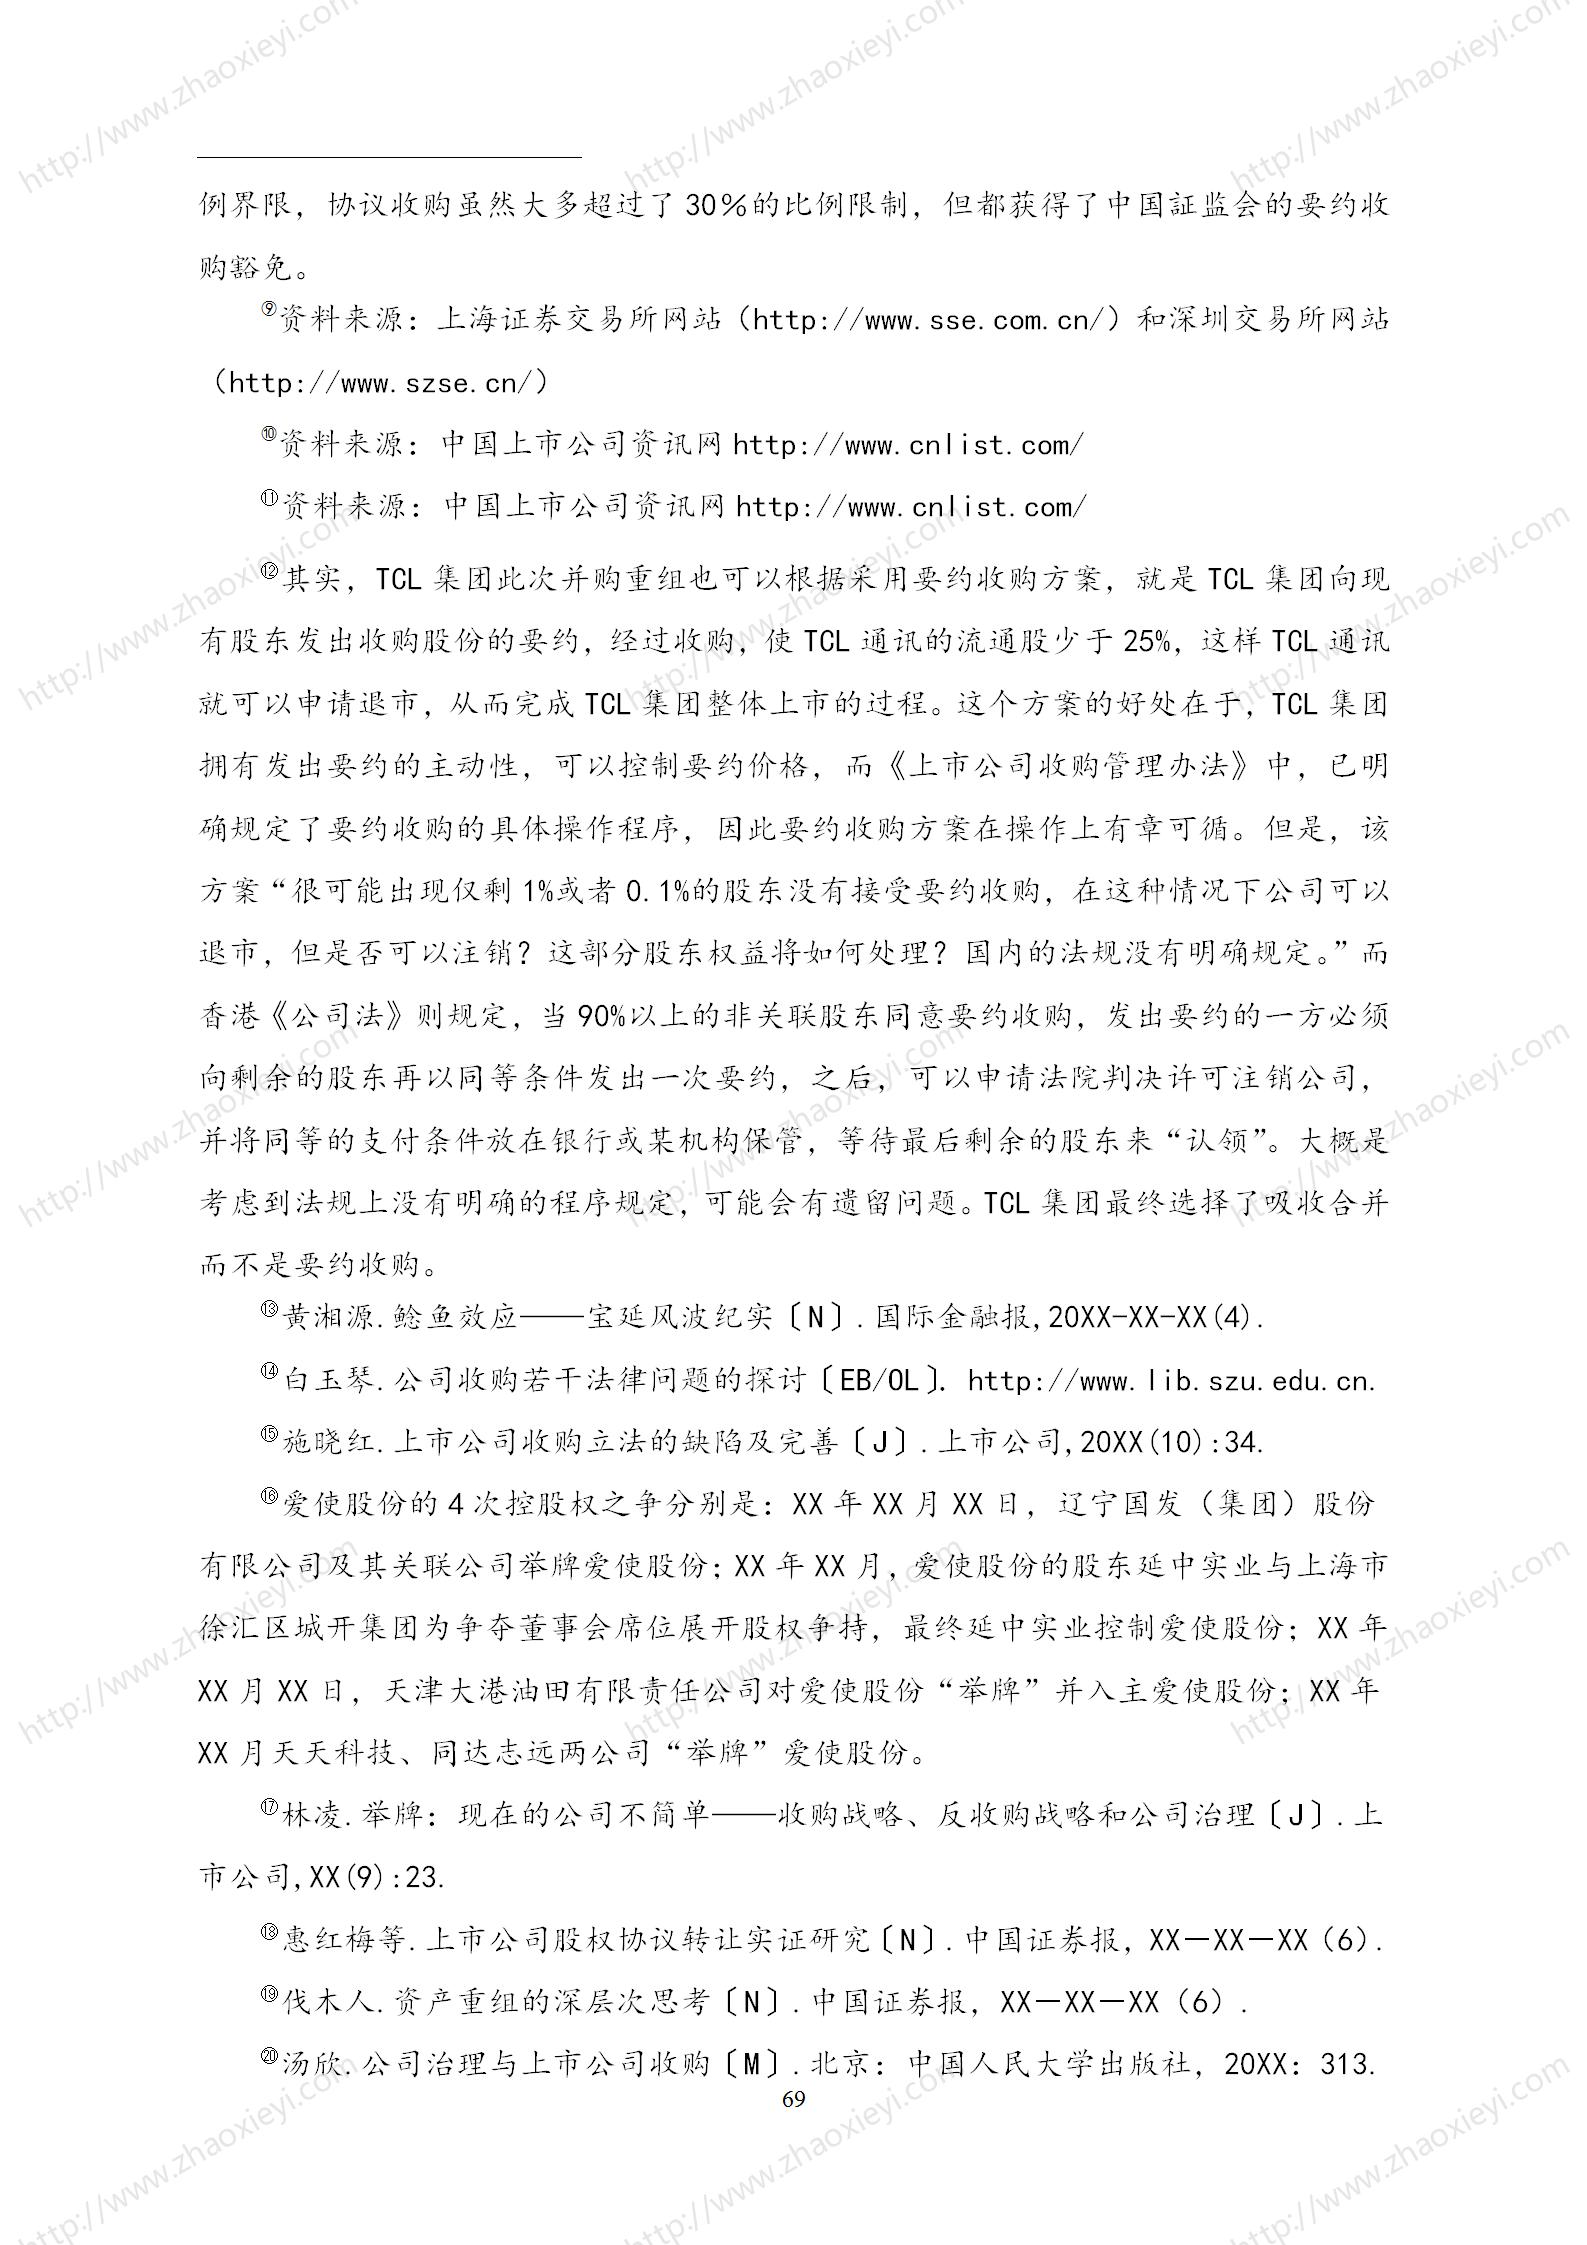 中国上市公司并购重组的模式研究_40.jpg